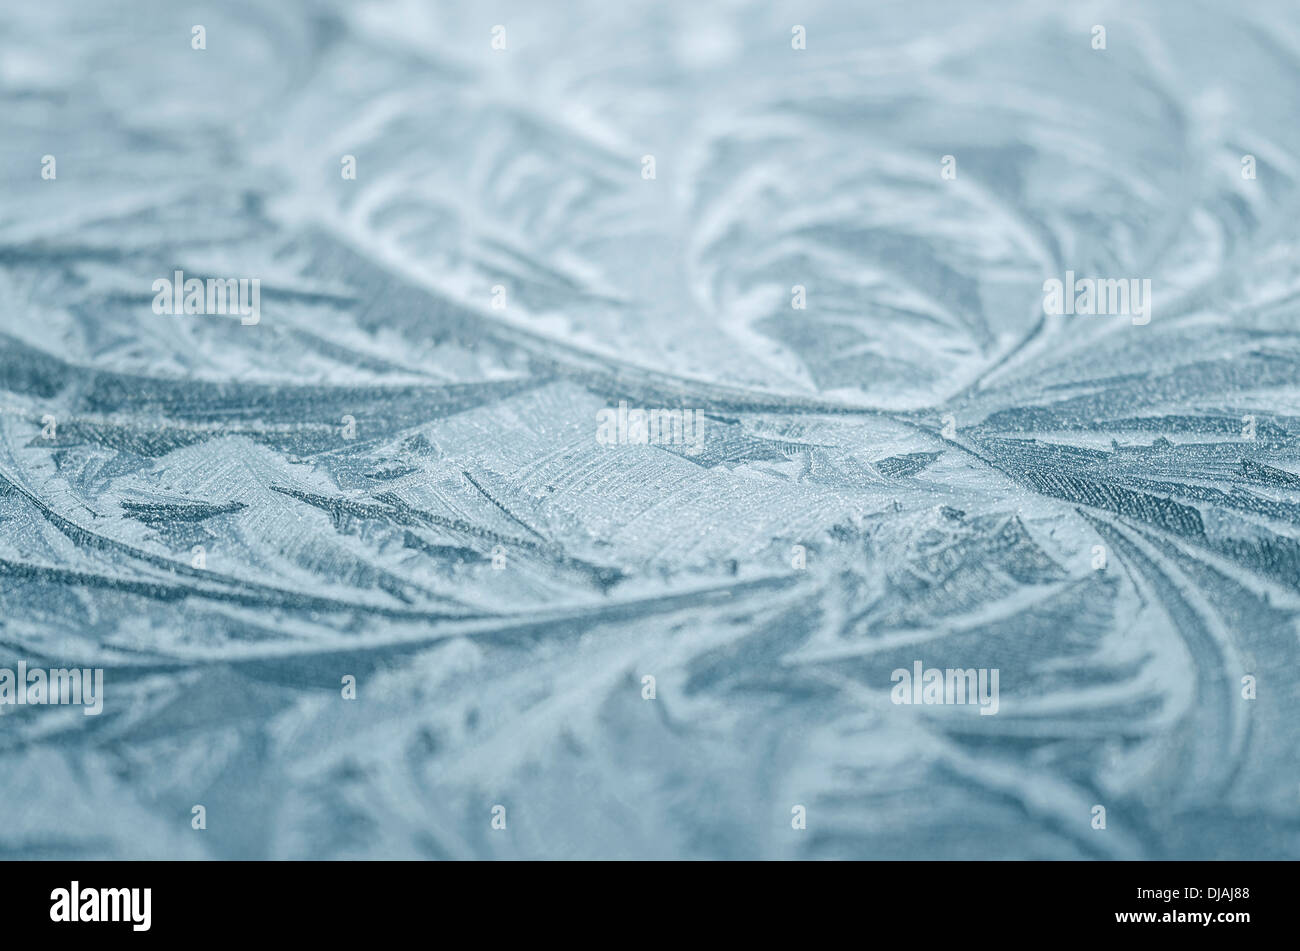 Close up de cristaux de glace formée sur une surface métallique froide Banque D'Images